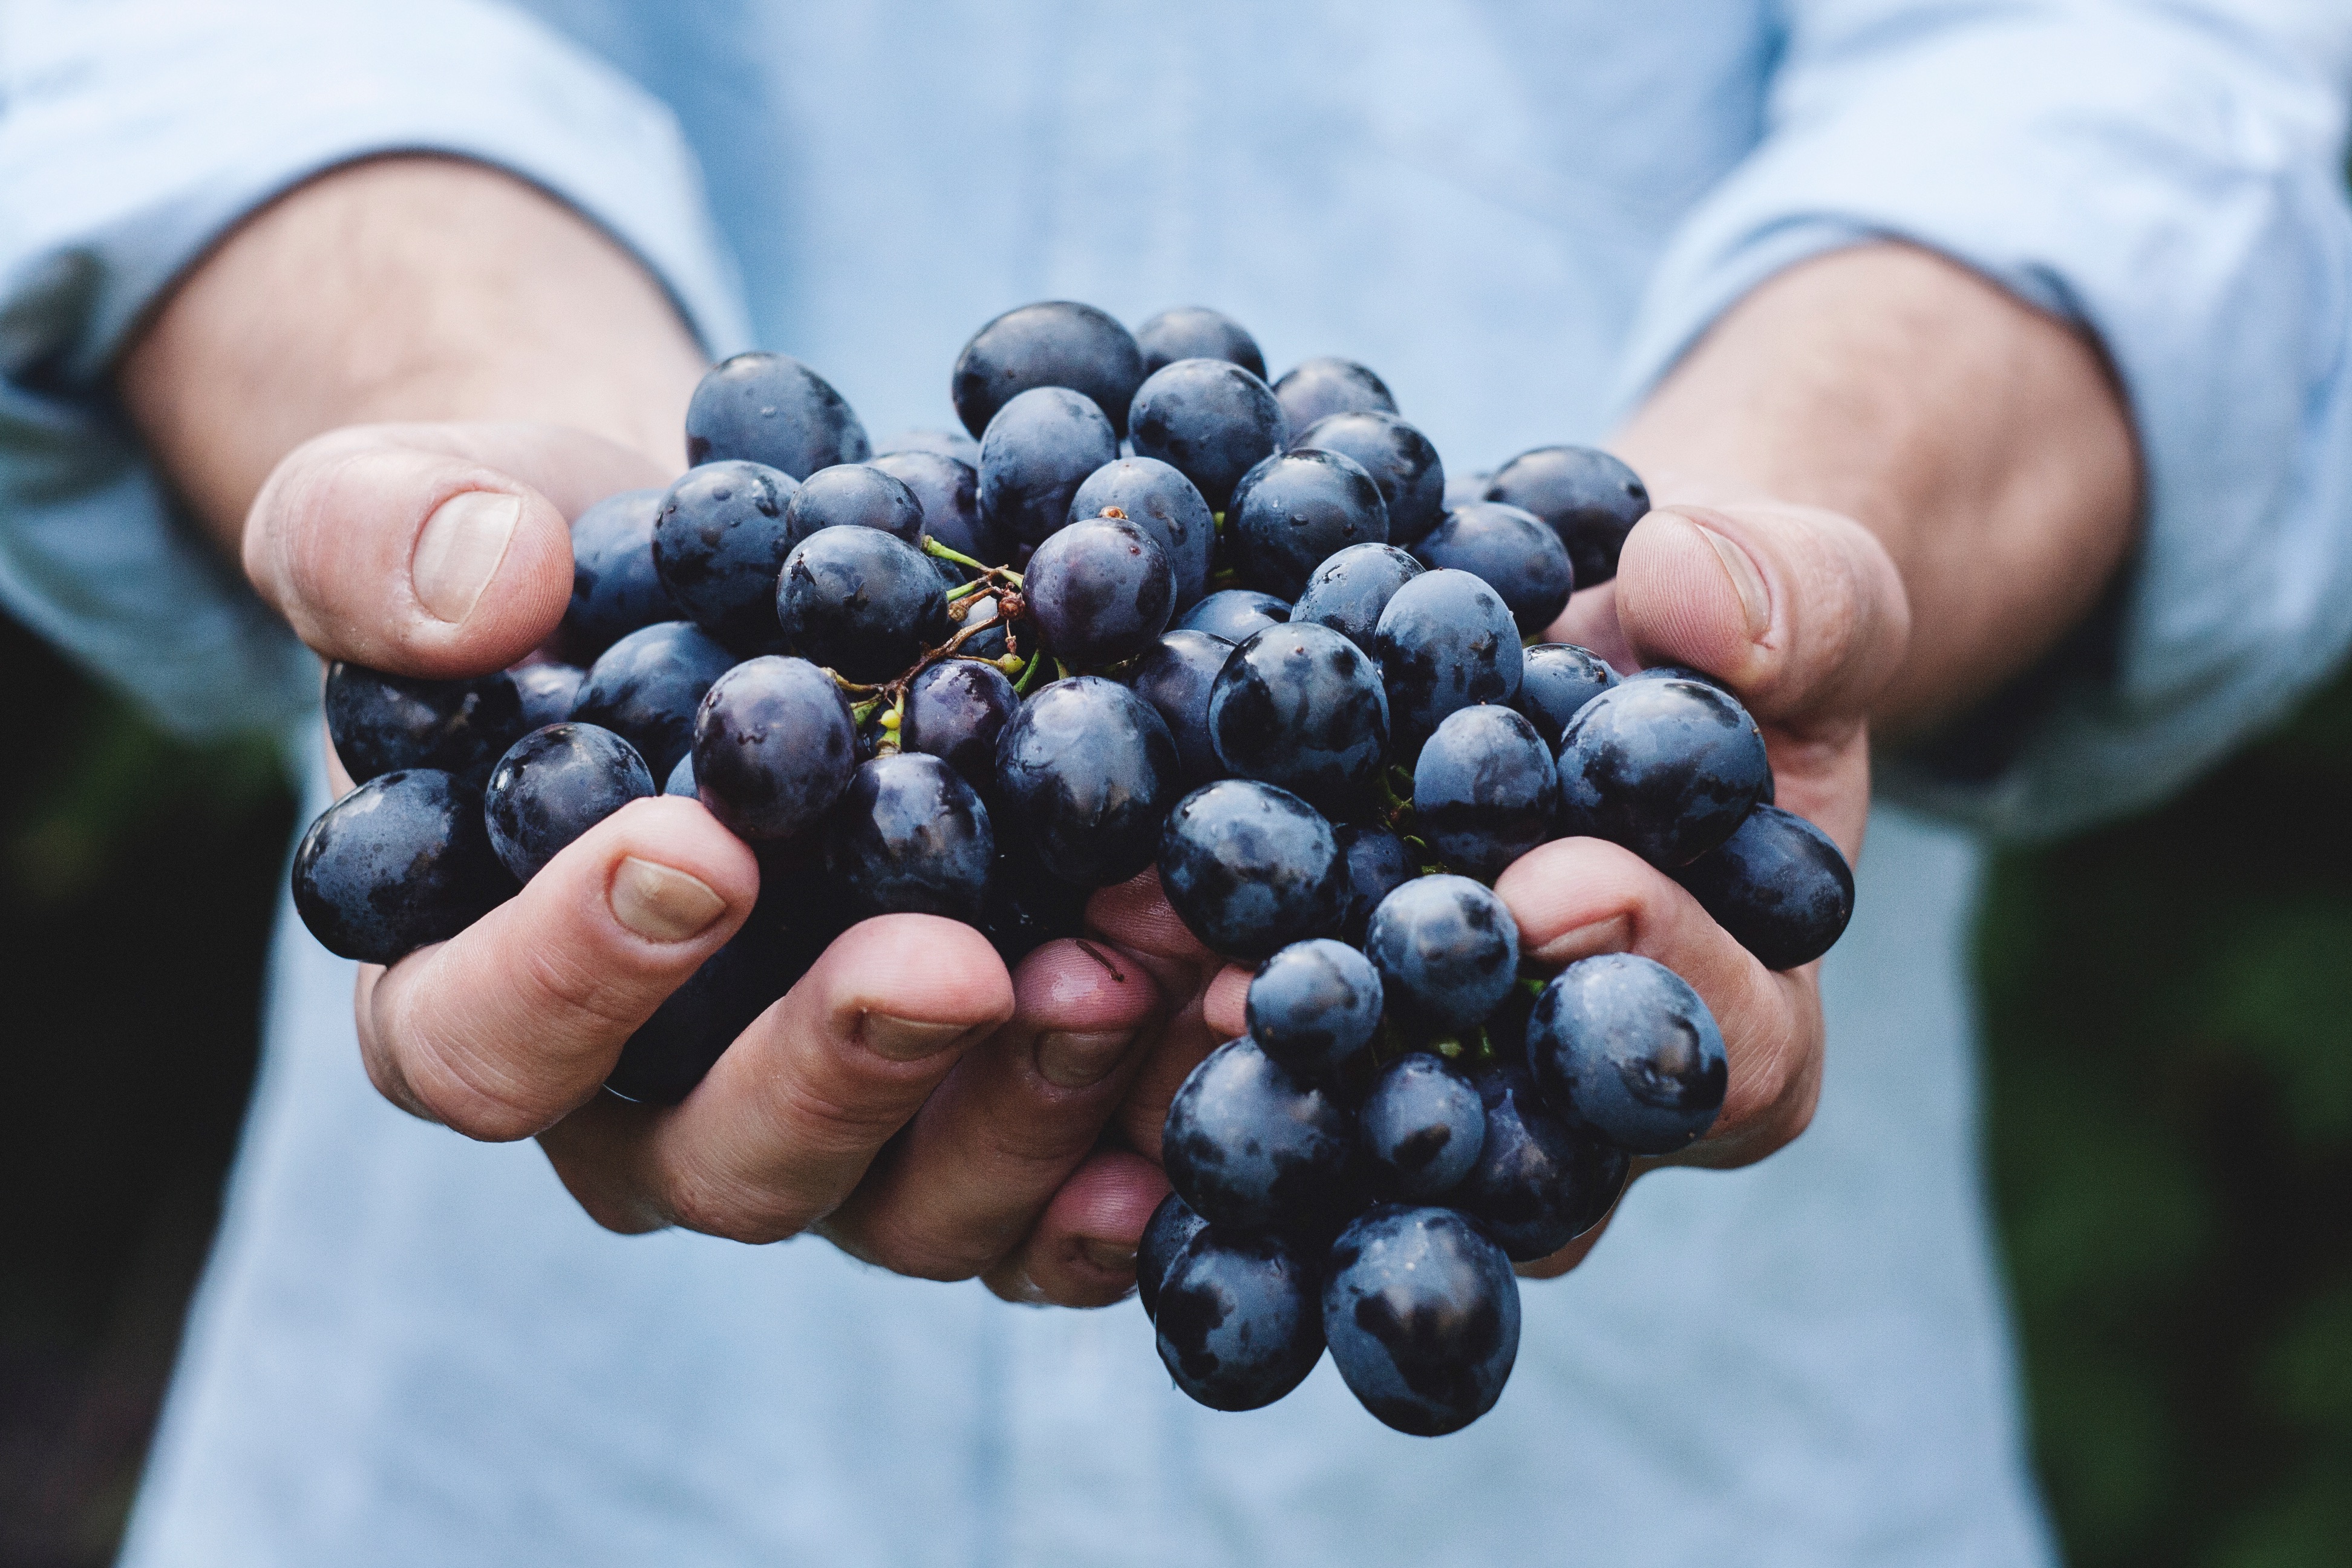 Colhendo uva: aproveite as oportunidades e aja com confiança